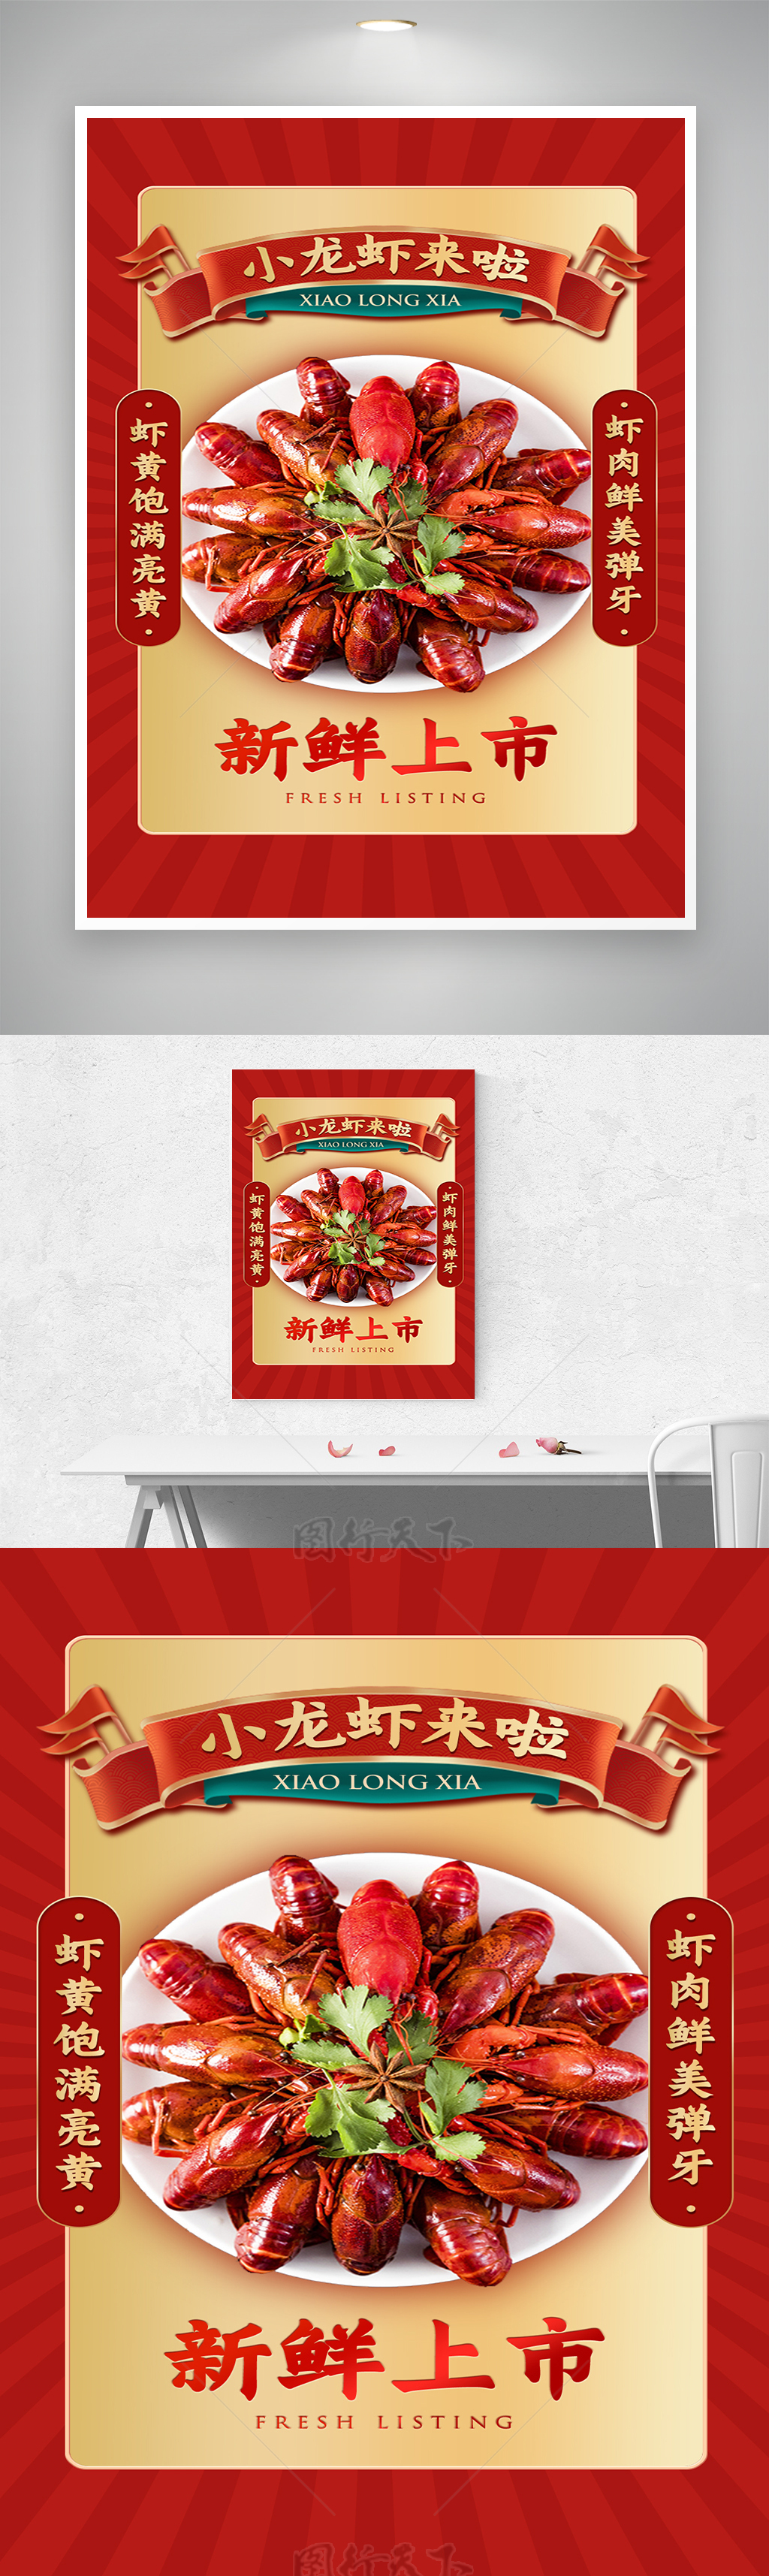 小龙虾狂欢季新鲜上市宣传海报